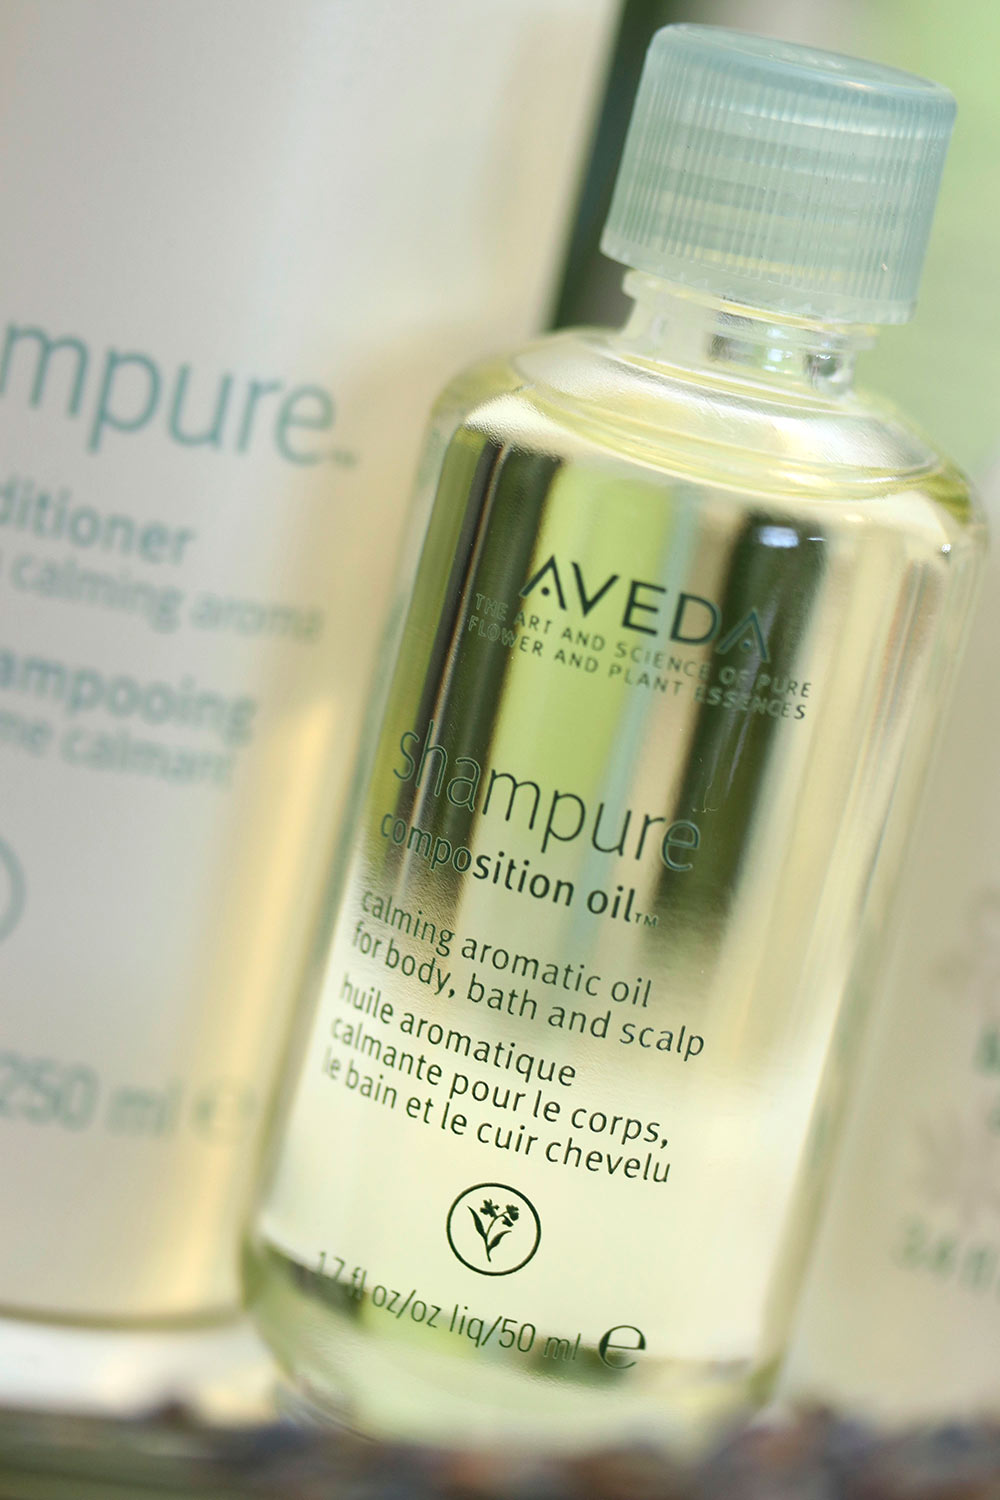 aveda shampure composition oil